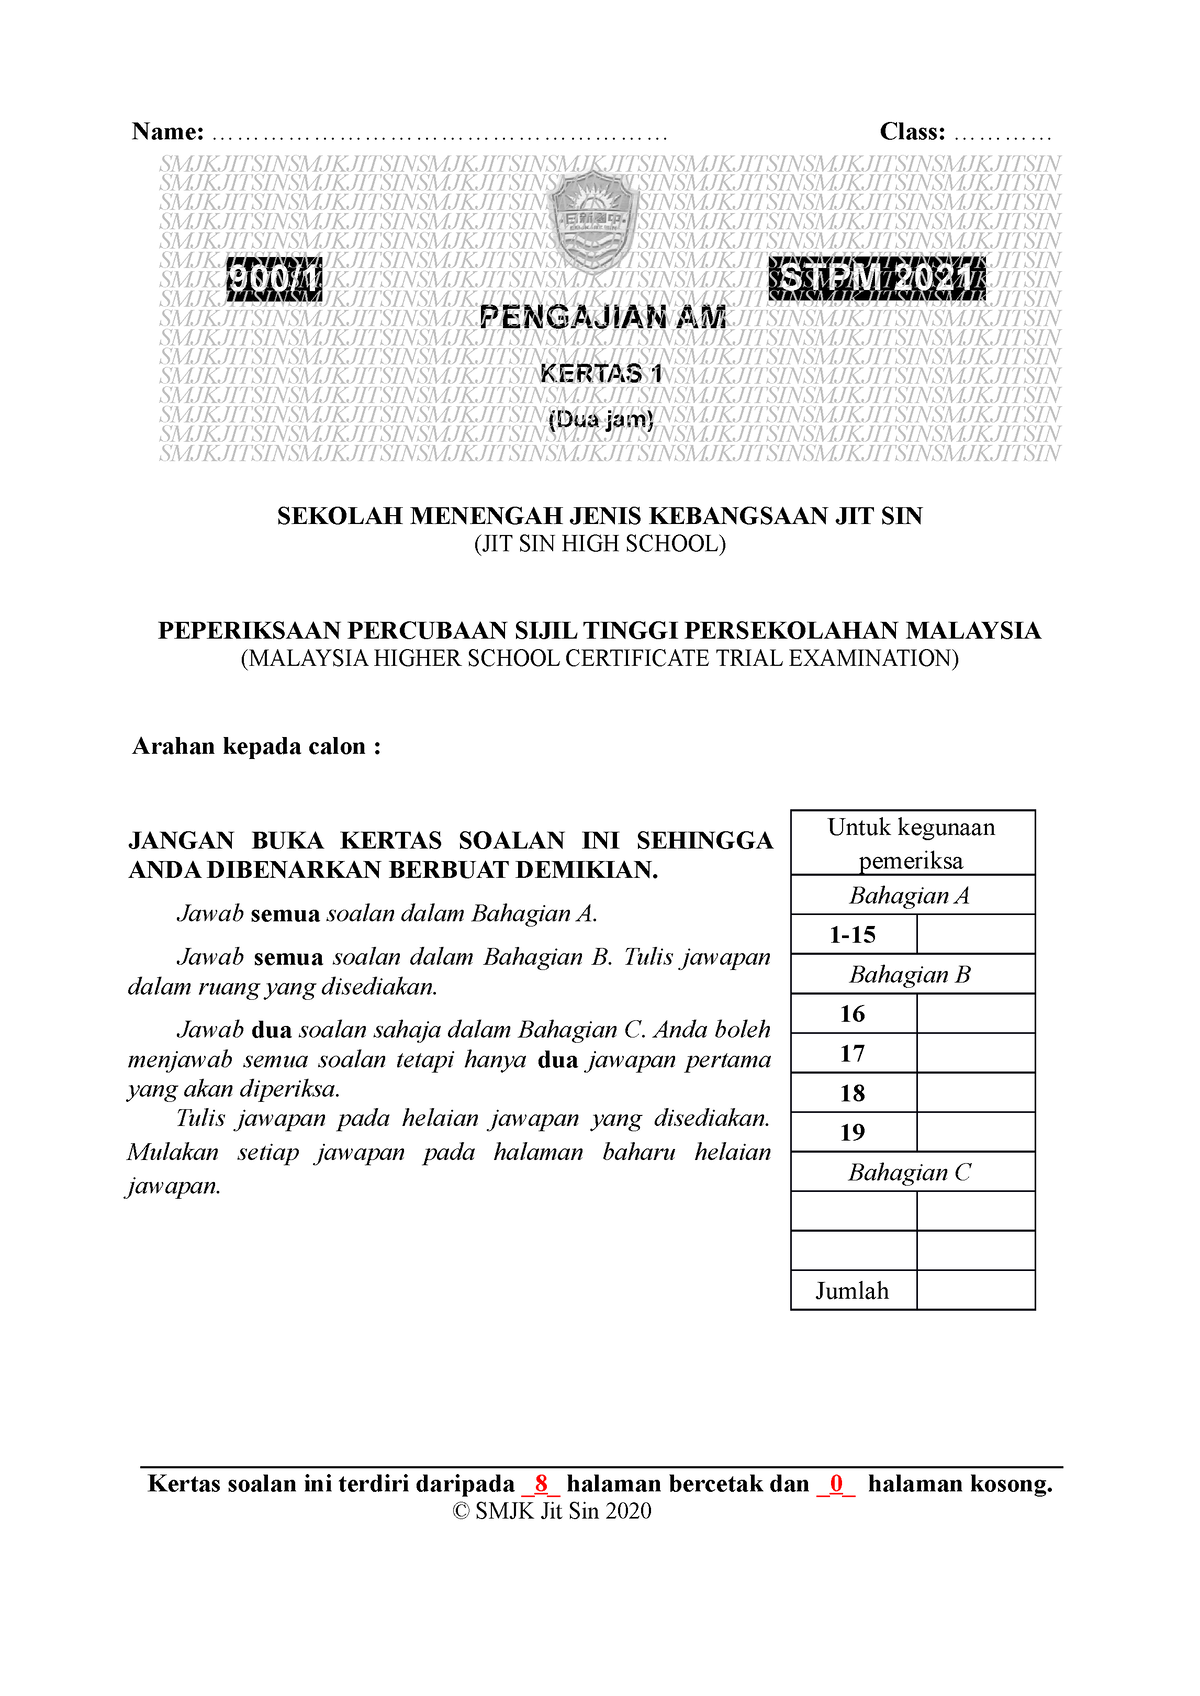 3 Soalan Trial Pengajian Am Sem 1 2021 Smjk Jit Sin Perniagaan Smk Datuk Haji Ahmad Said Studocu